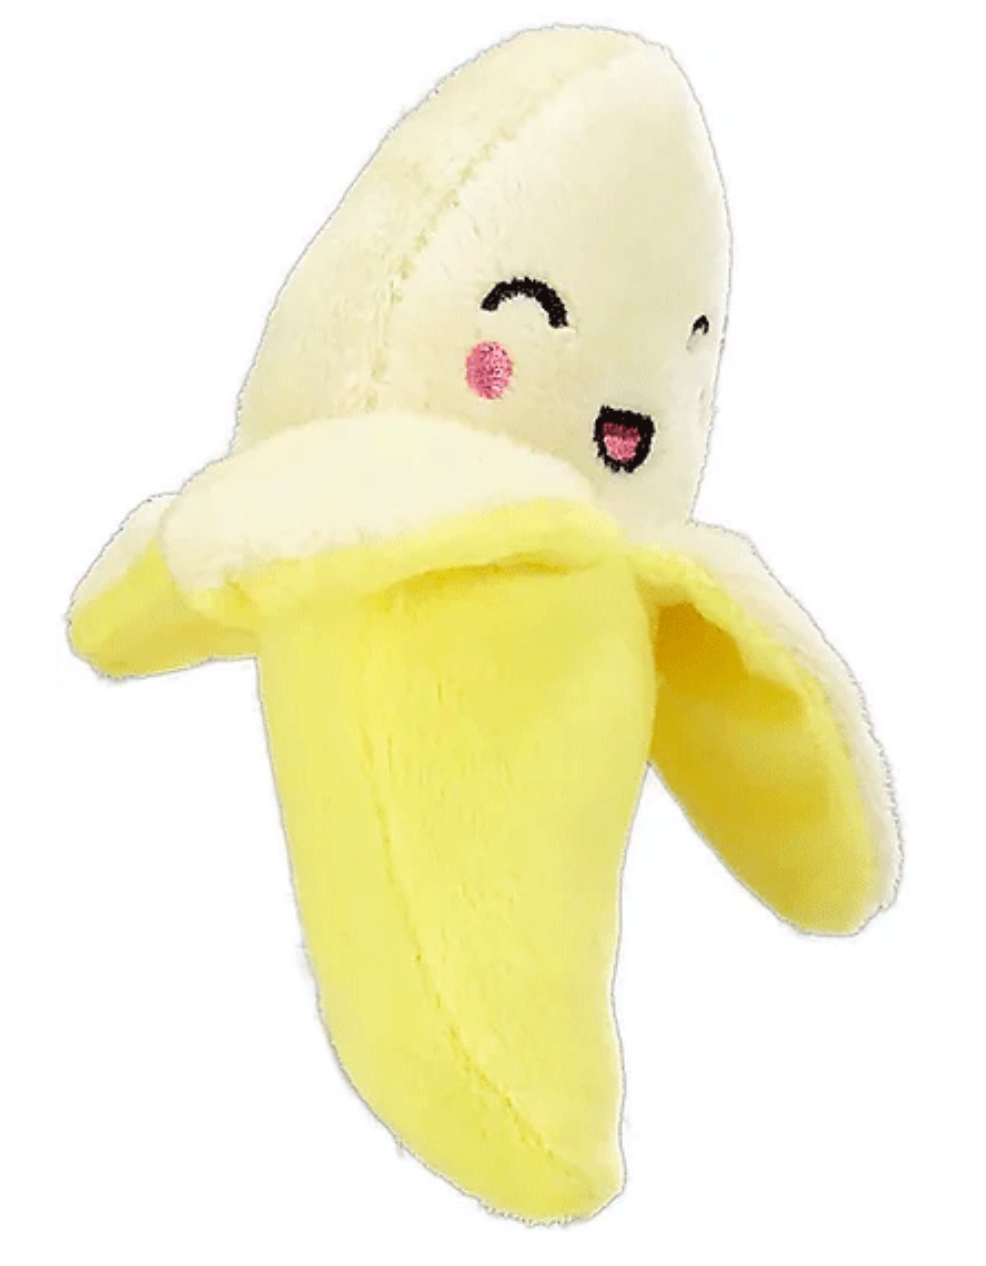 Banana!